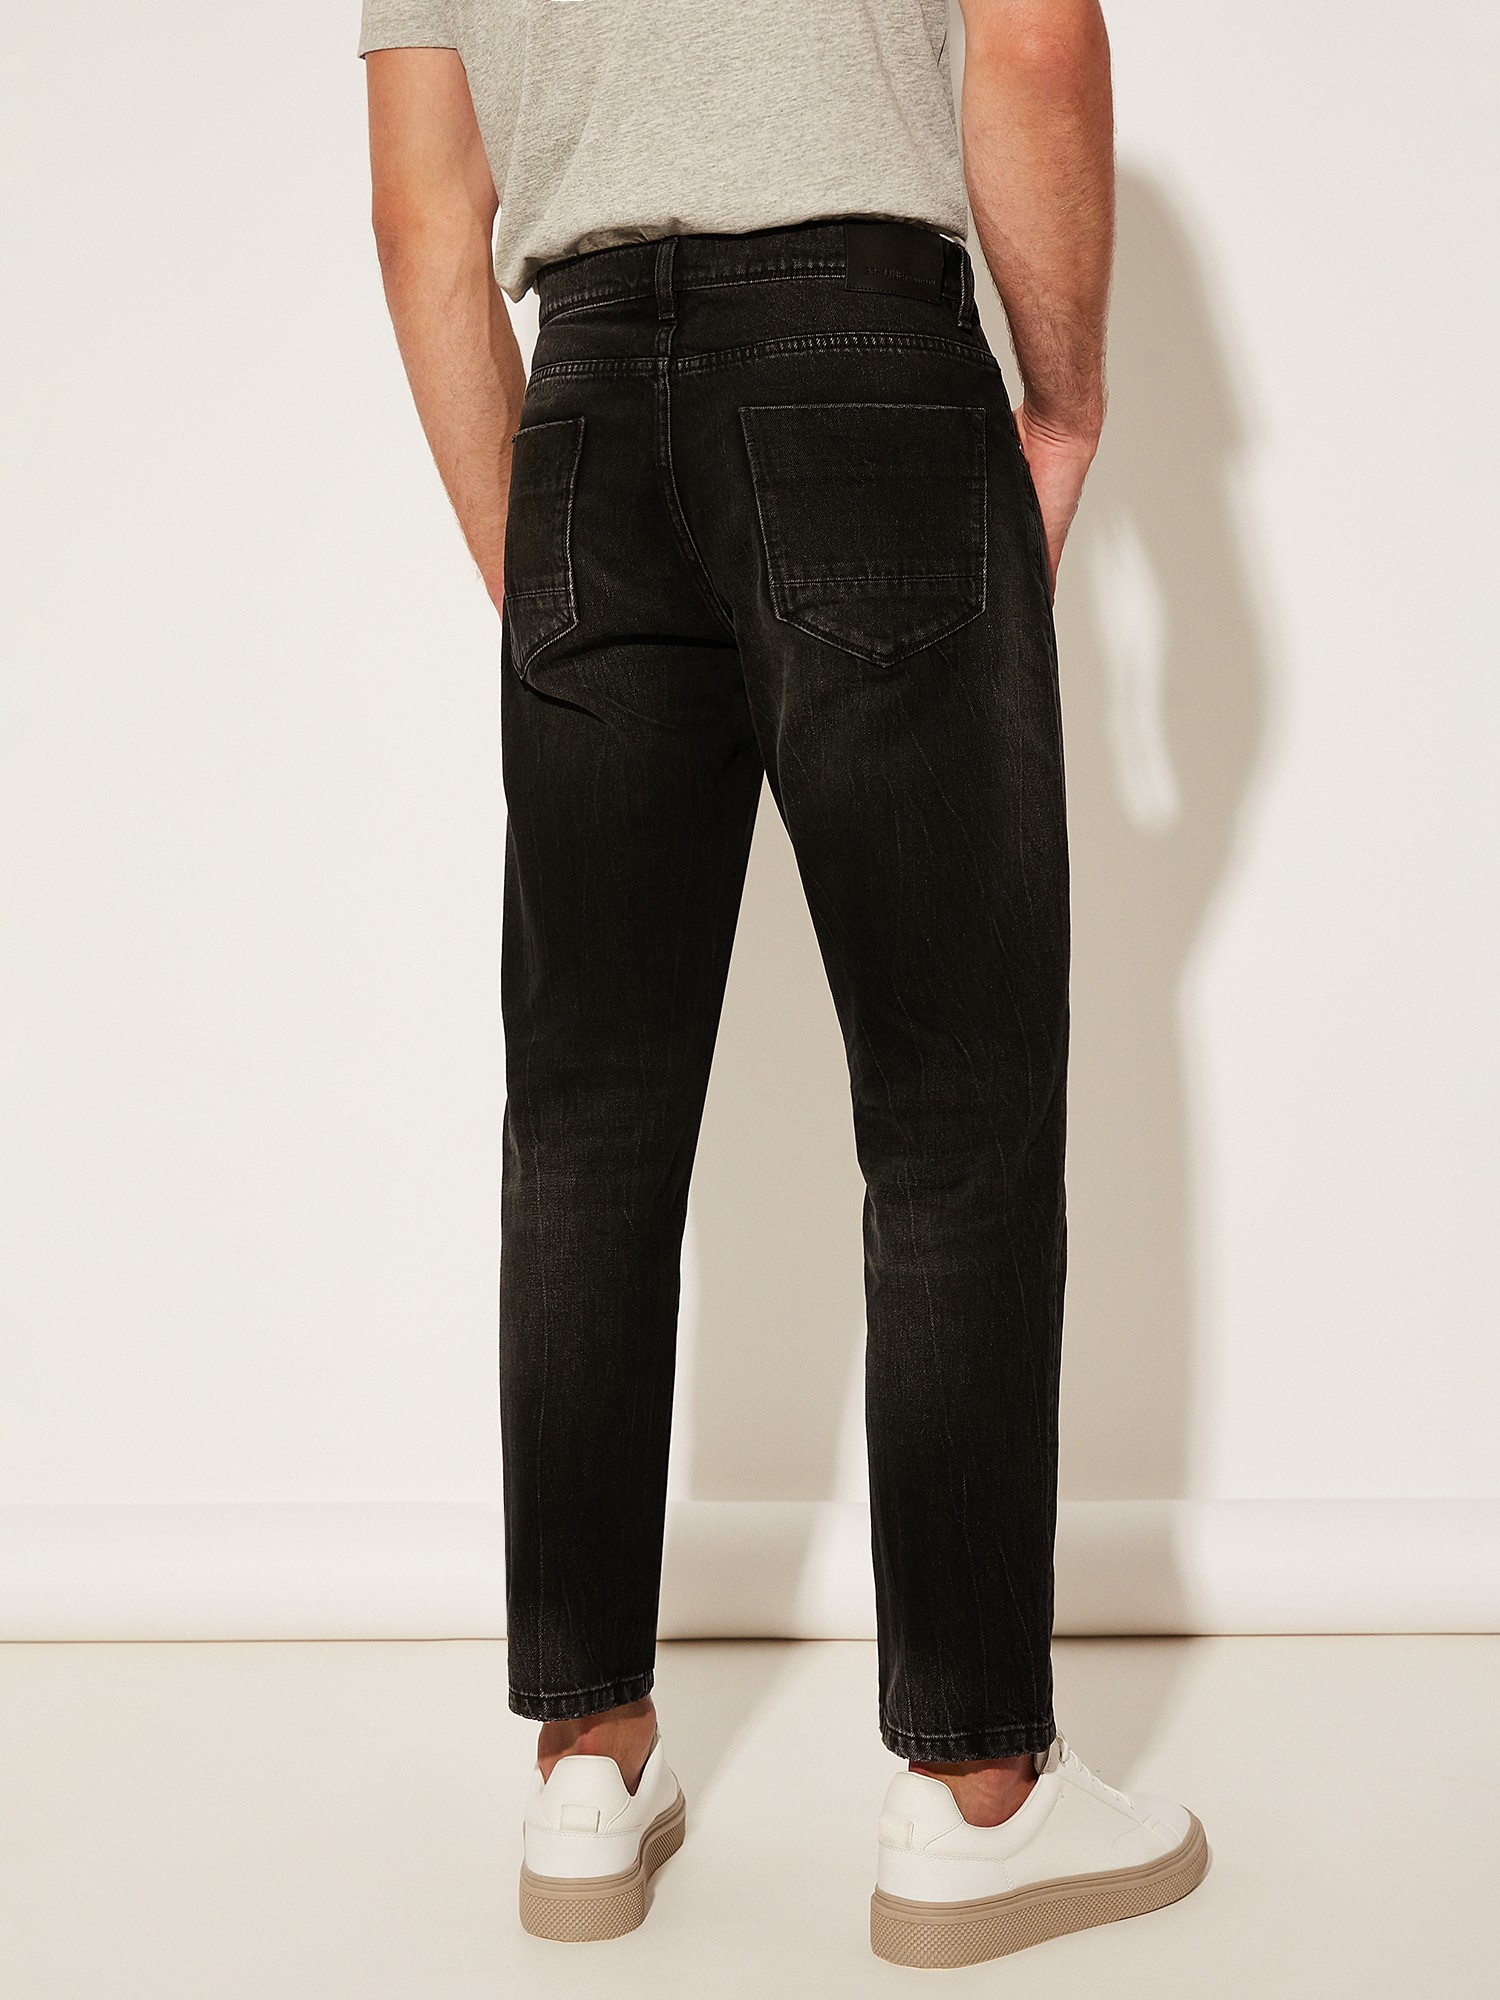 Чёрные джинсы с эффектом размытой окраски 20LINE IDJ00026 - фото 4